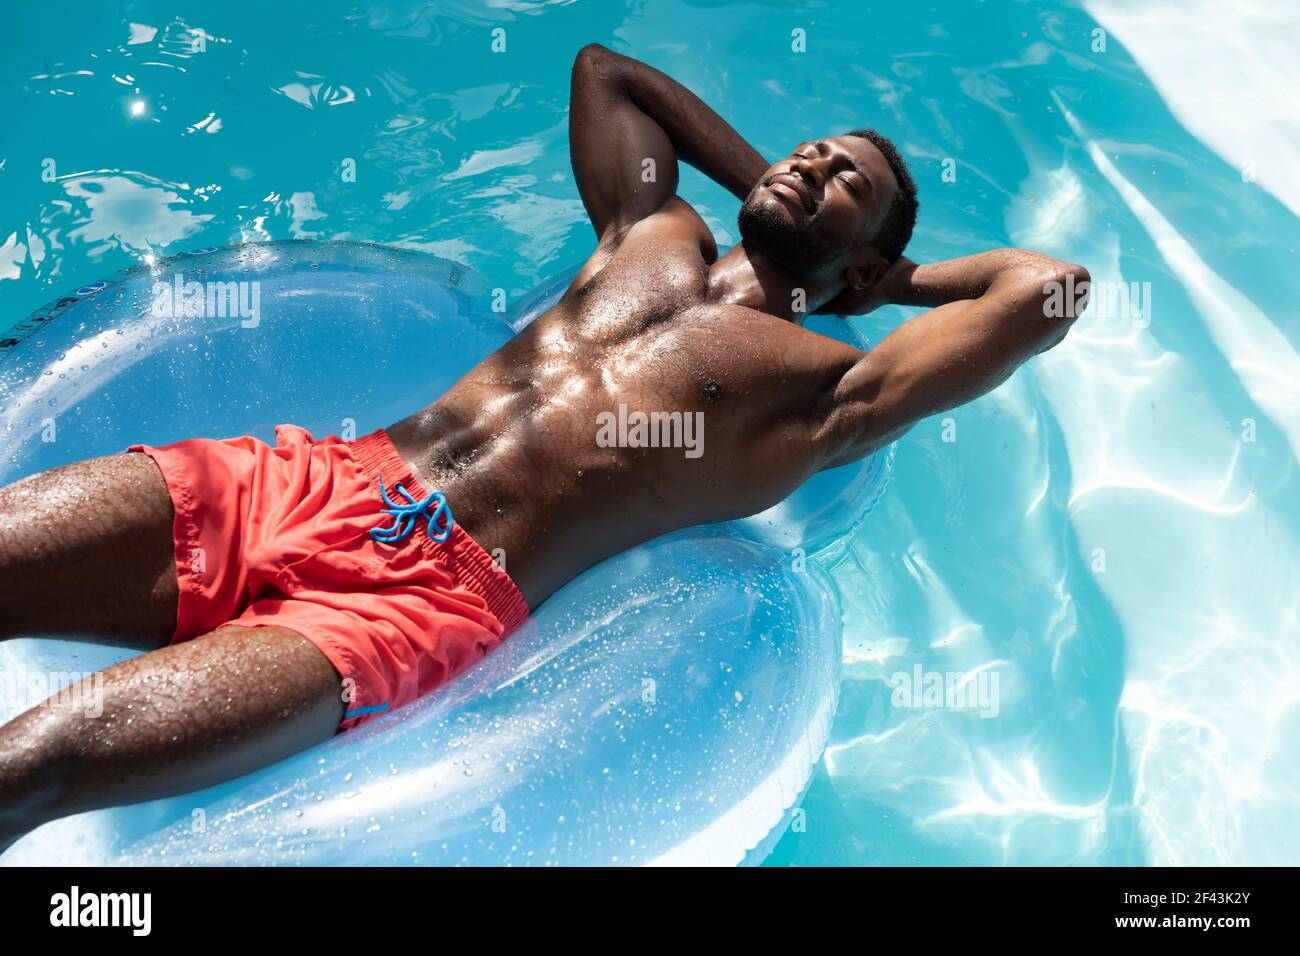 jeune homme avec un beau corps en maillot de bain sautant sur une plage  tropicale. 4241911 Photo de stock chez Vecteezy